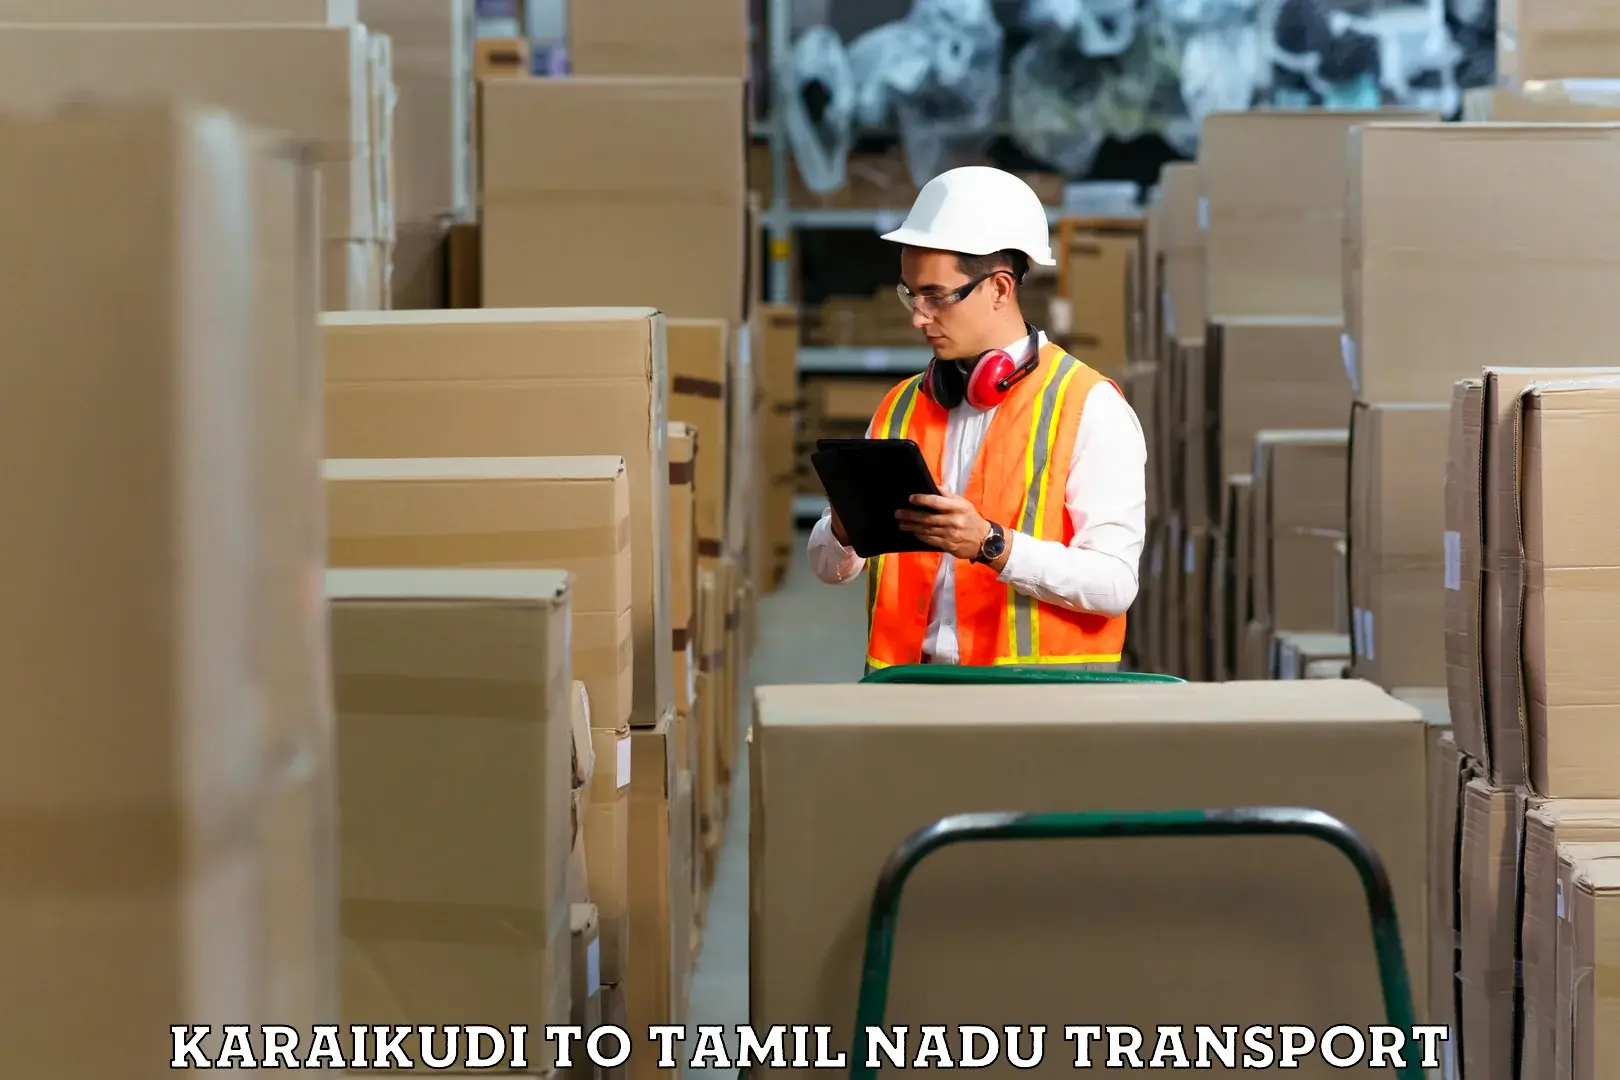 Delivery service Karaikudi to Paramakudi